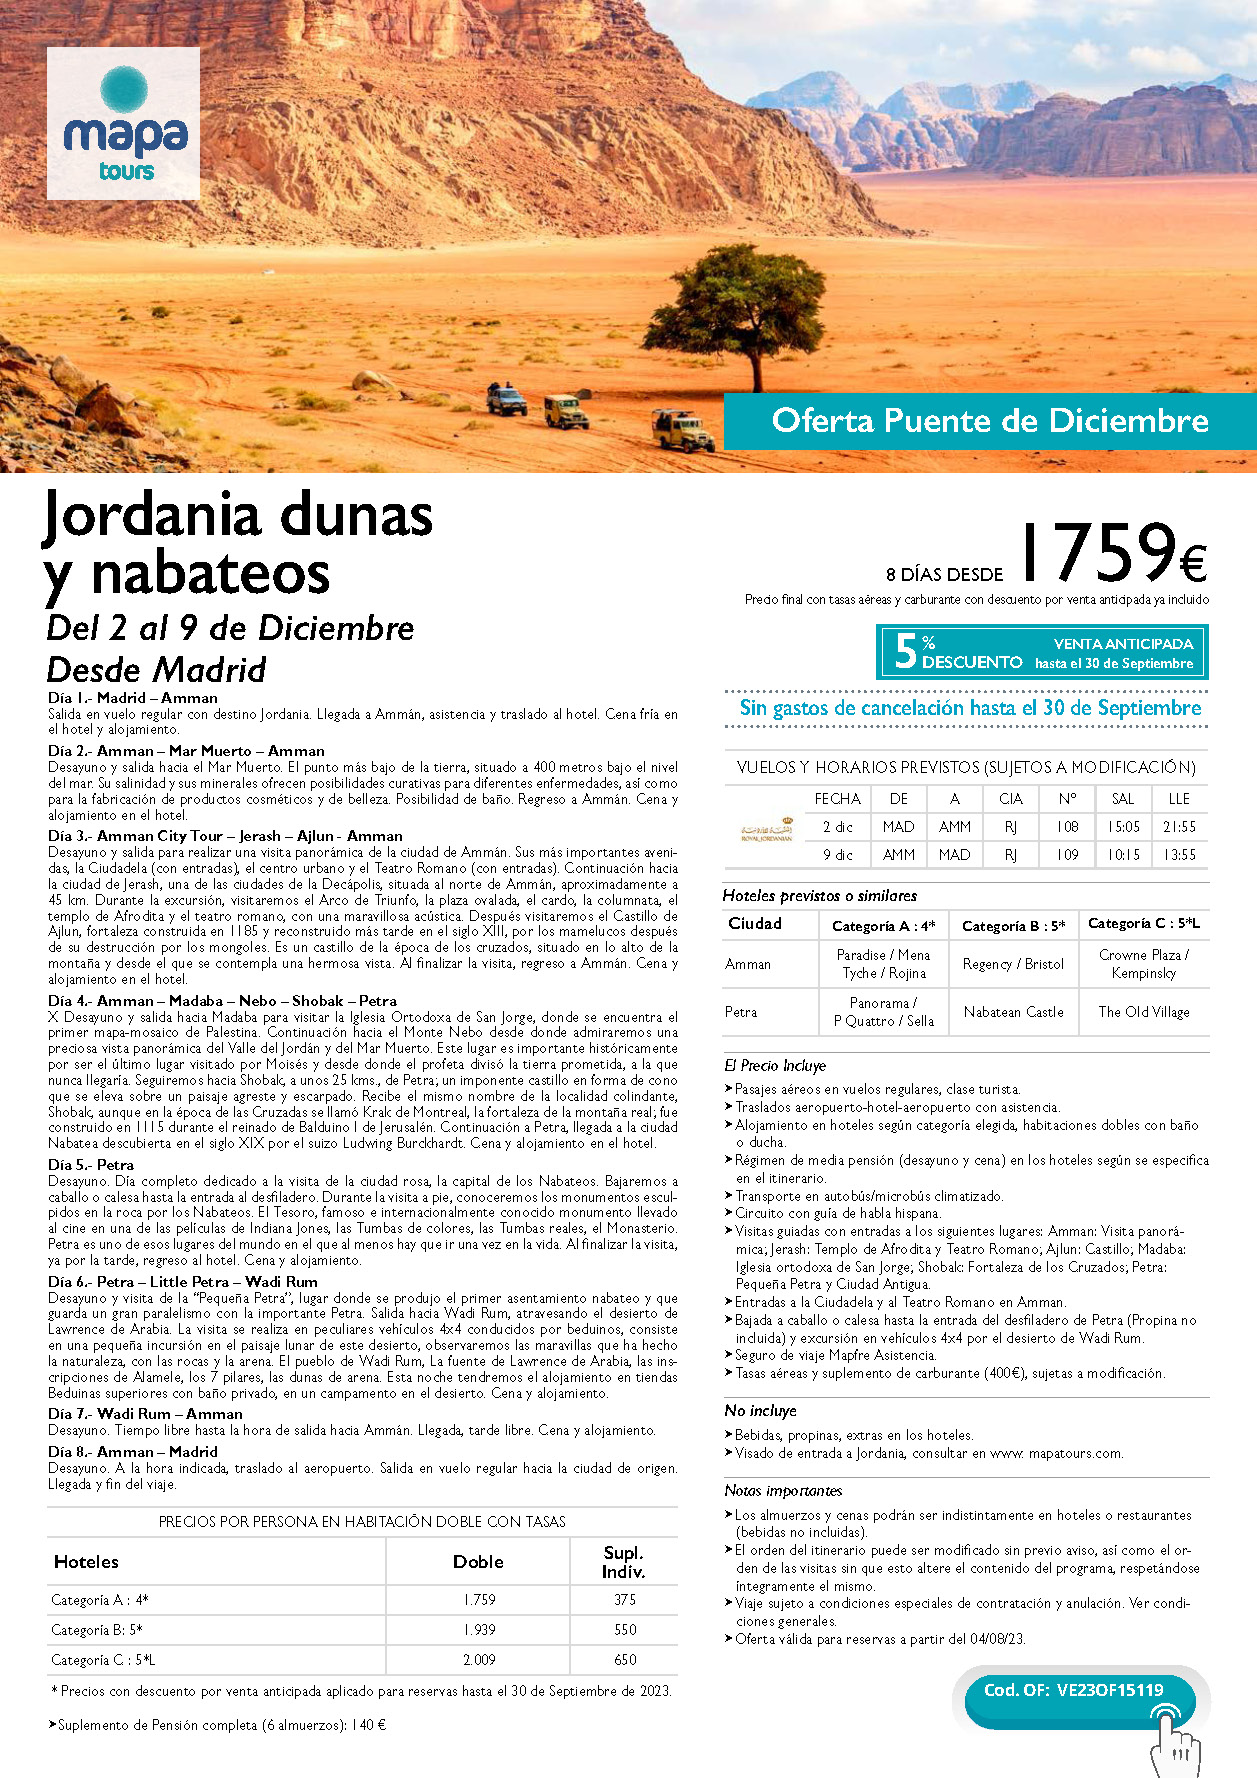 Oferta Mapa Tours Puente de Diciembre 2023 circuito Jordania Dunas y Nabateos 8 dias salida 2 de diciembre en vuelo directo desde Madrid